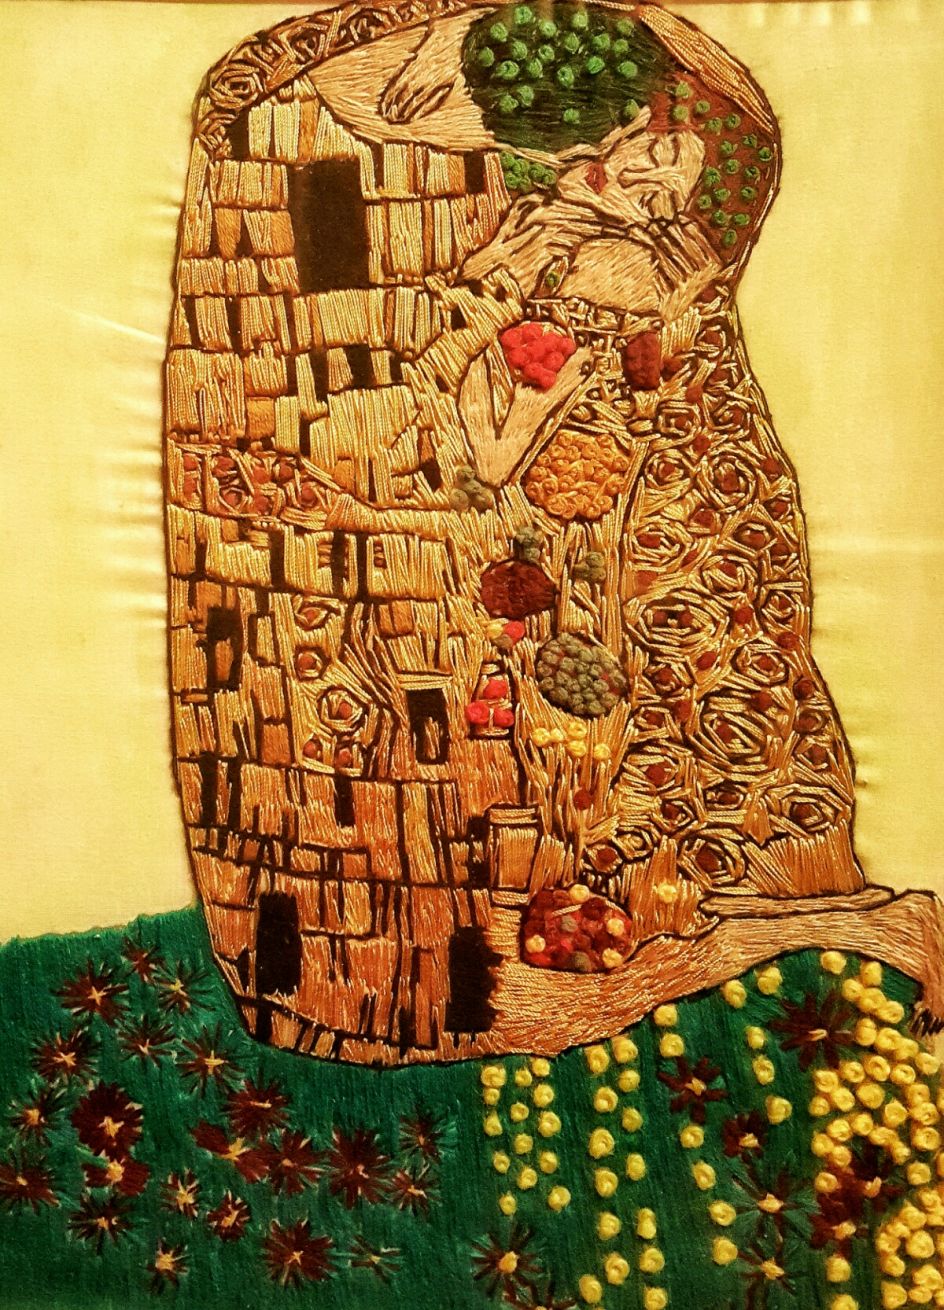 Inspired by The Kiss - Gustav Klimt